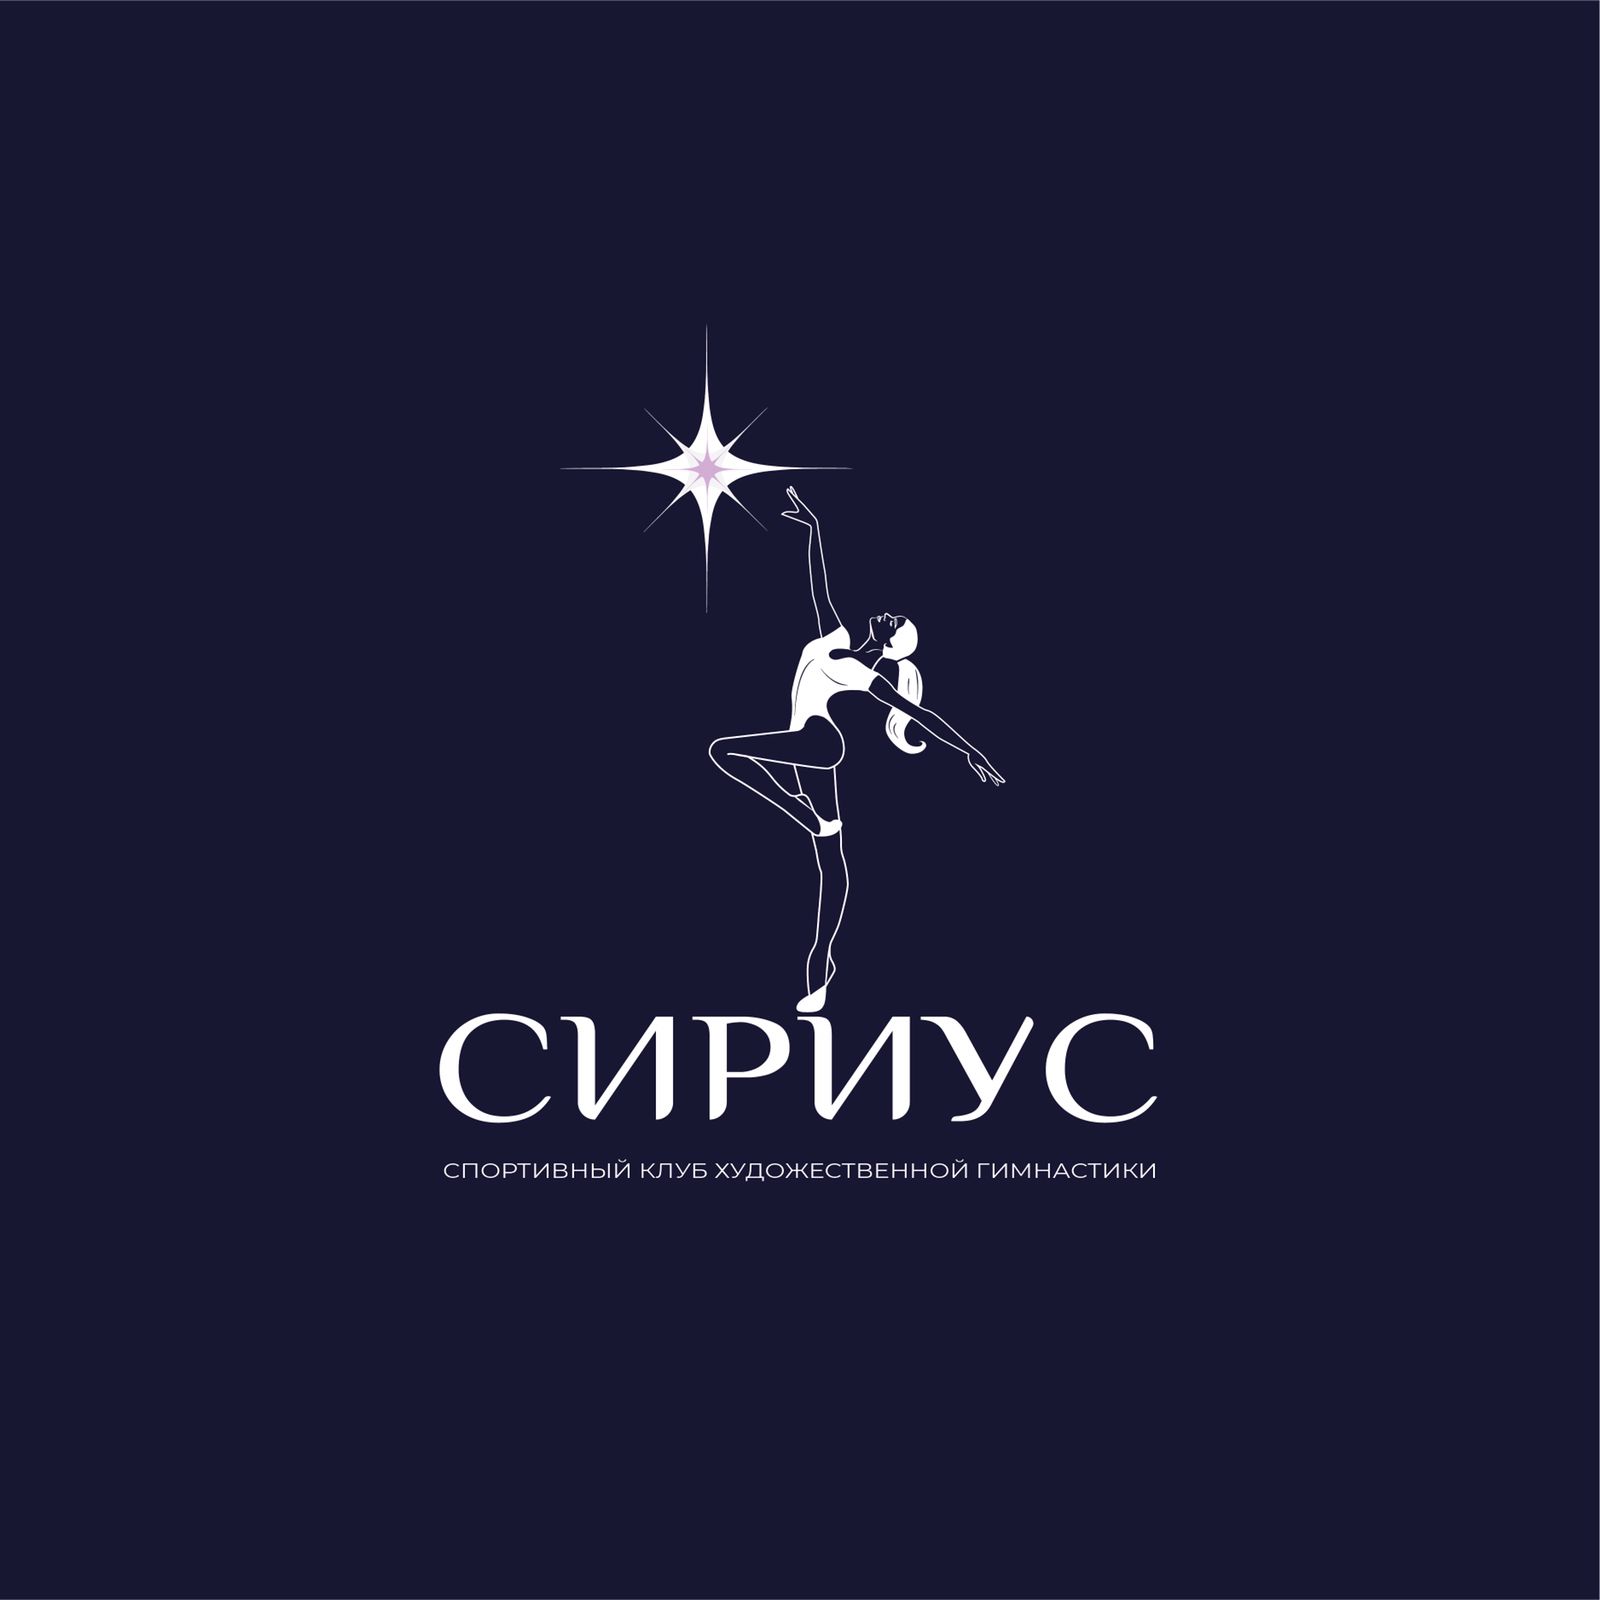 Спортивный клуб художественной гимнастики «Сириус»